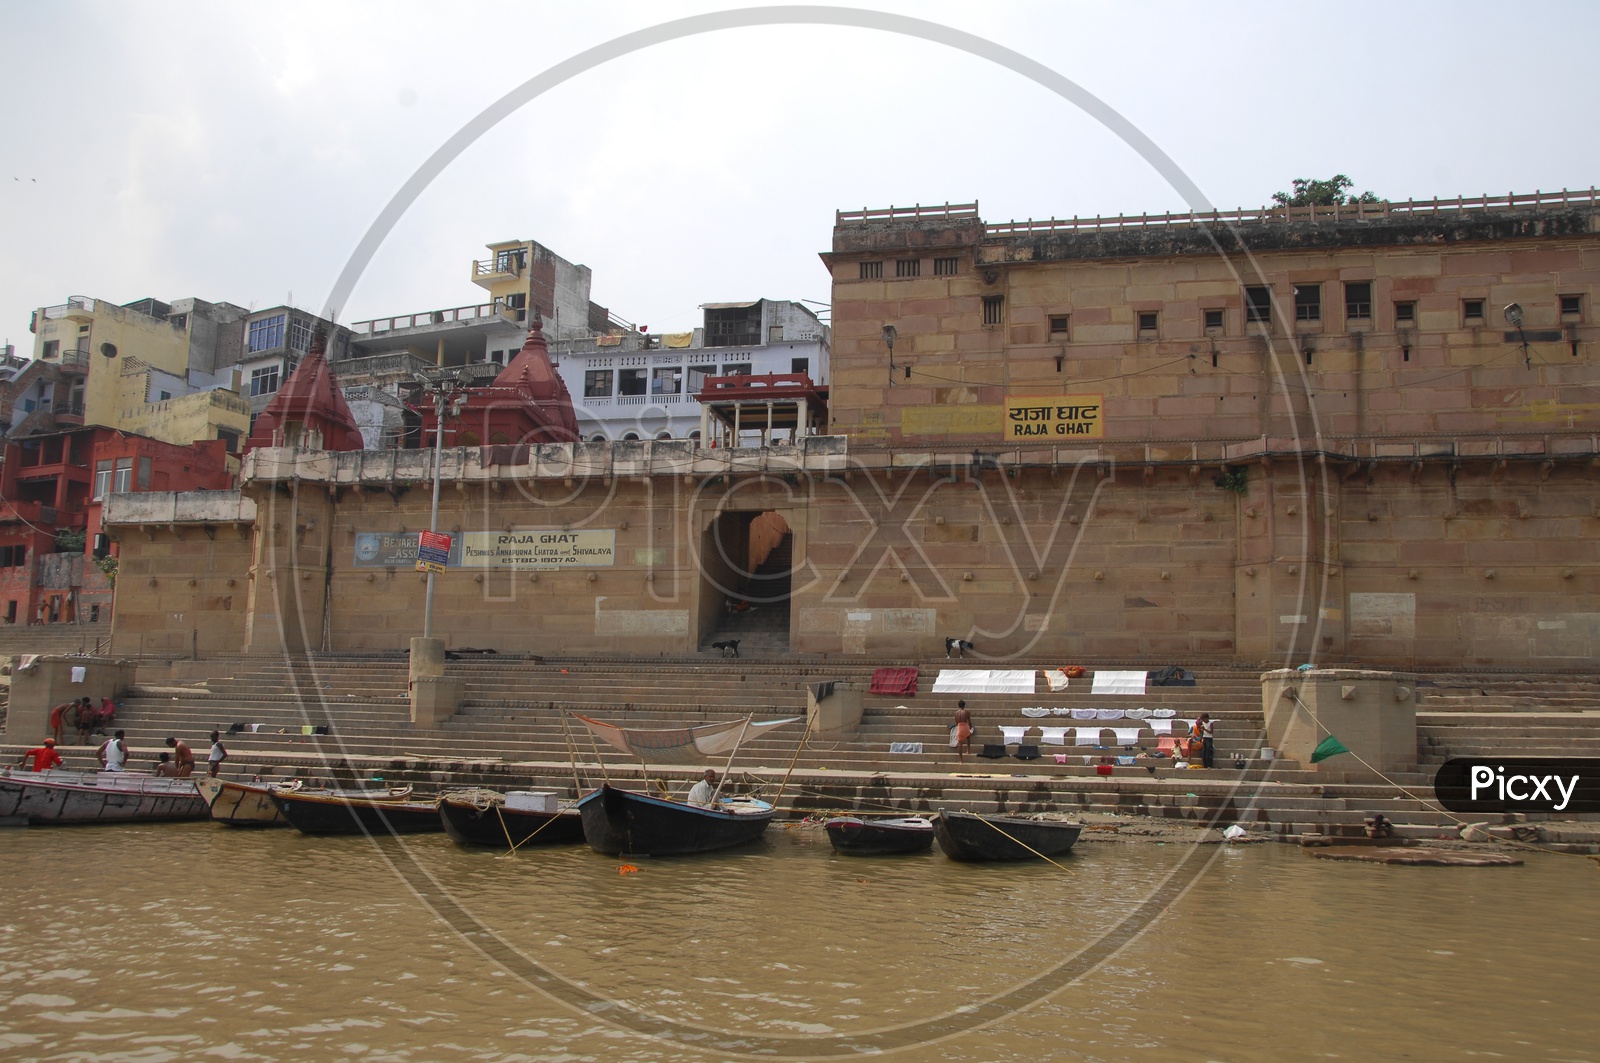 Raja Ghat in Varanasi